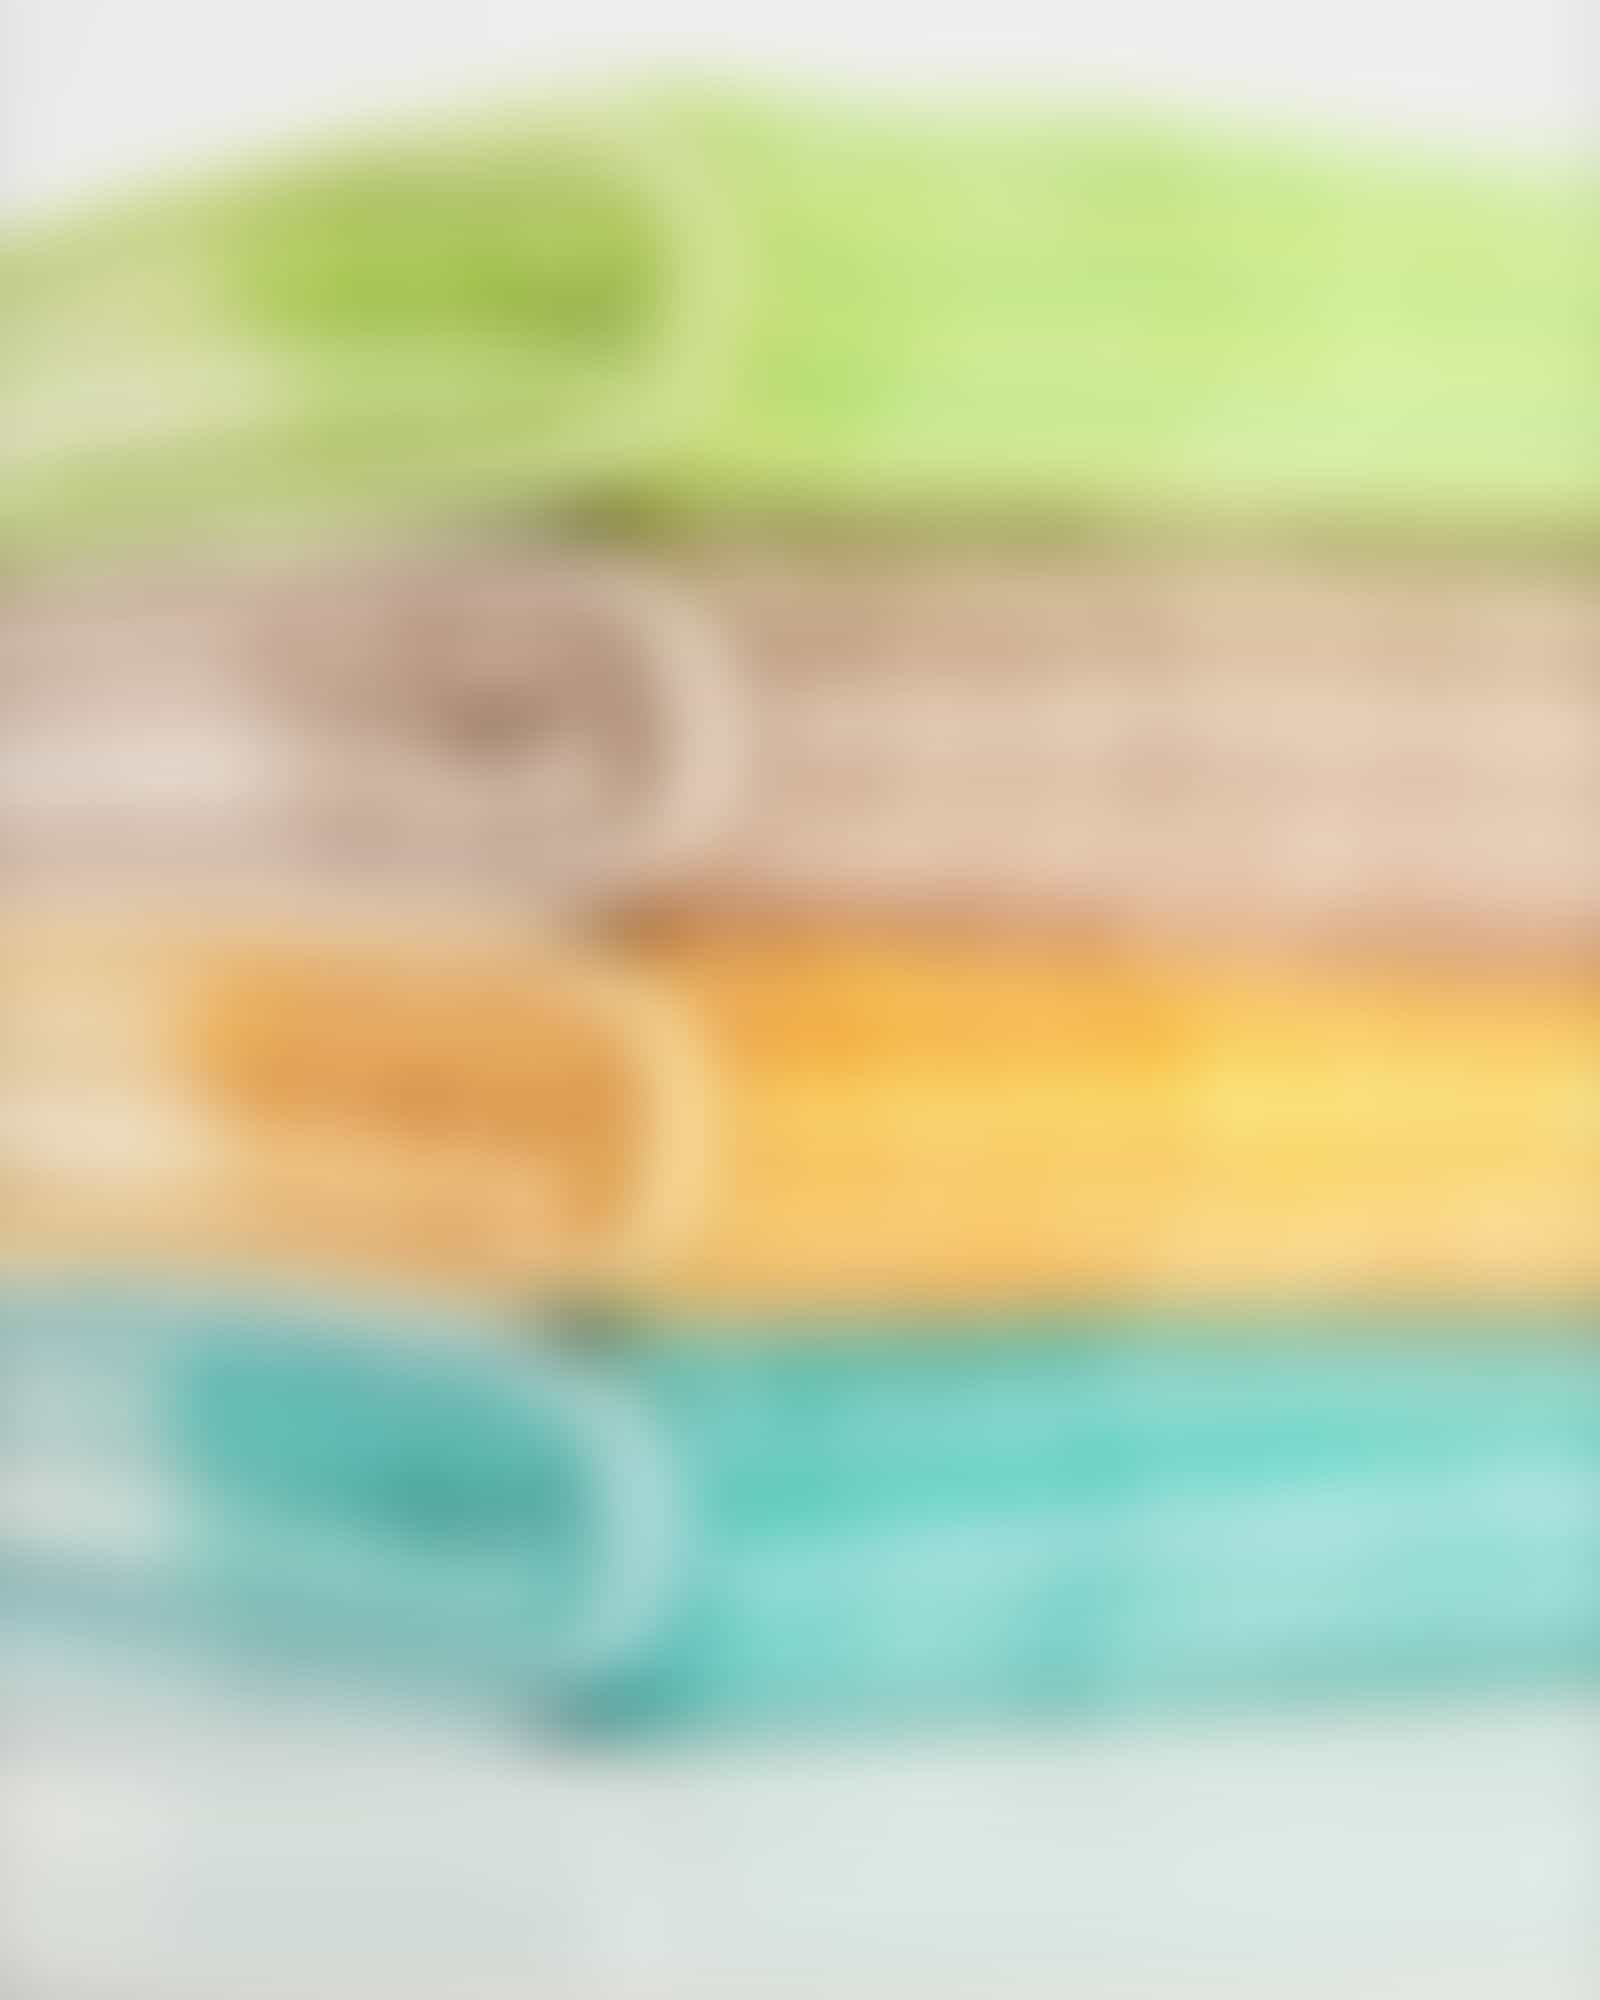 Cawö - Noblesse Cashmere Streifen 1056 - Farbe: sand - 33 Handtuch 50x100 cm